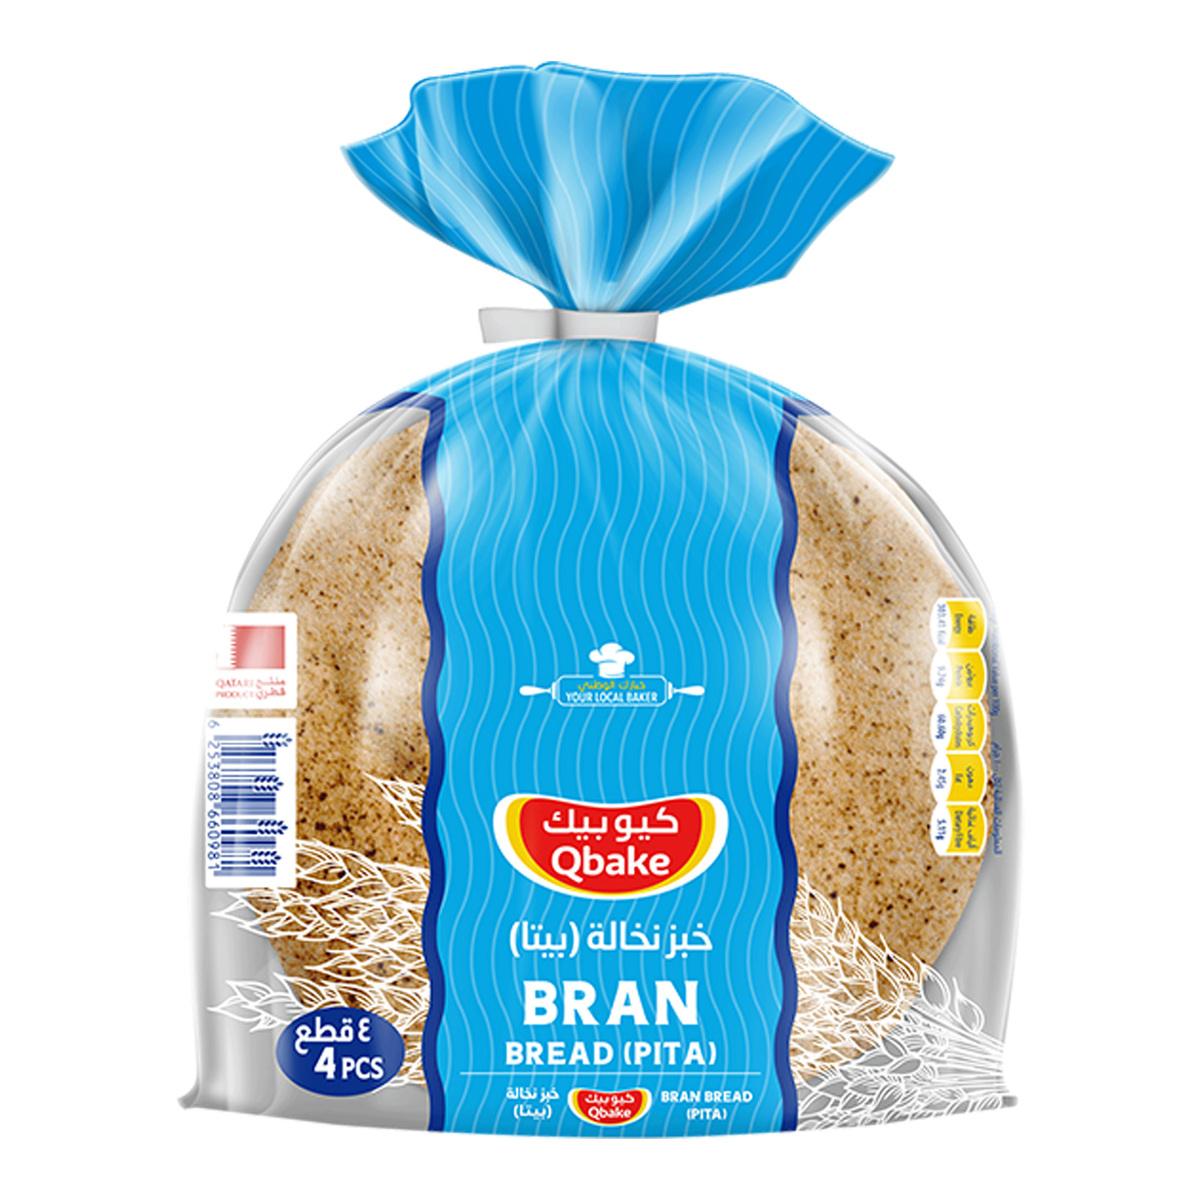 Qbake Bran Bread Pita 4pcs